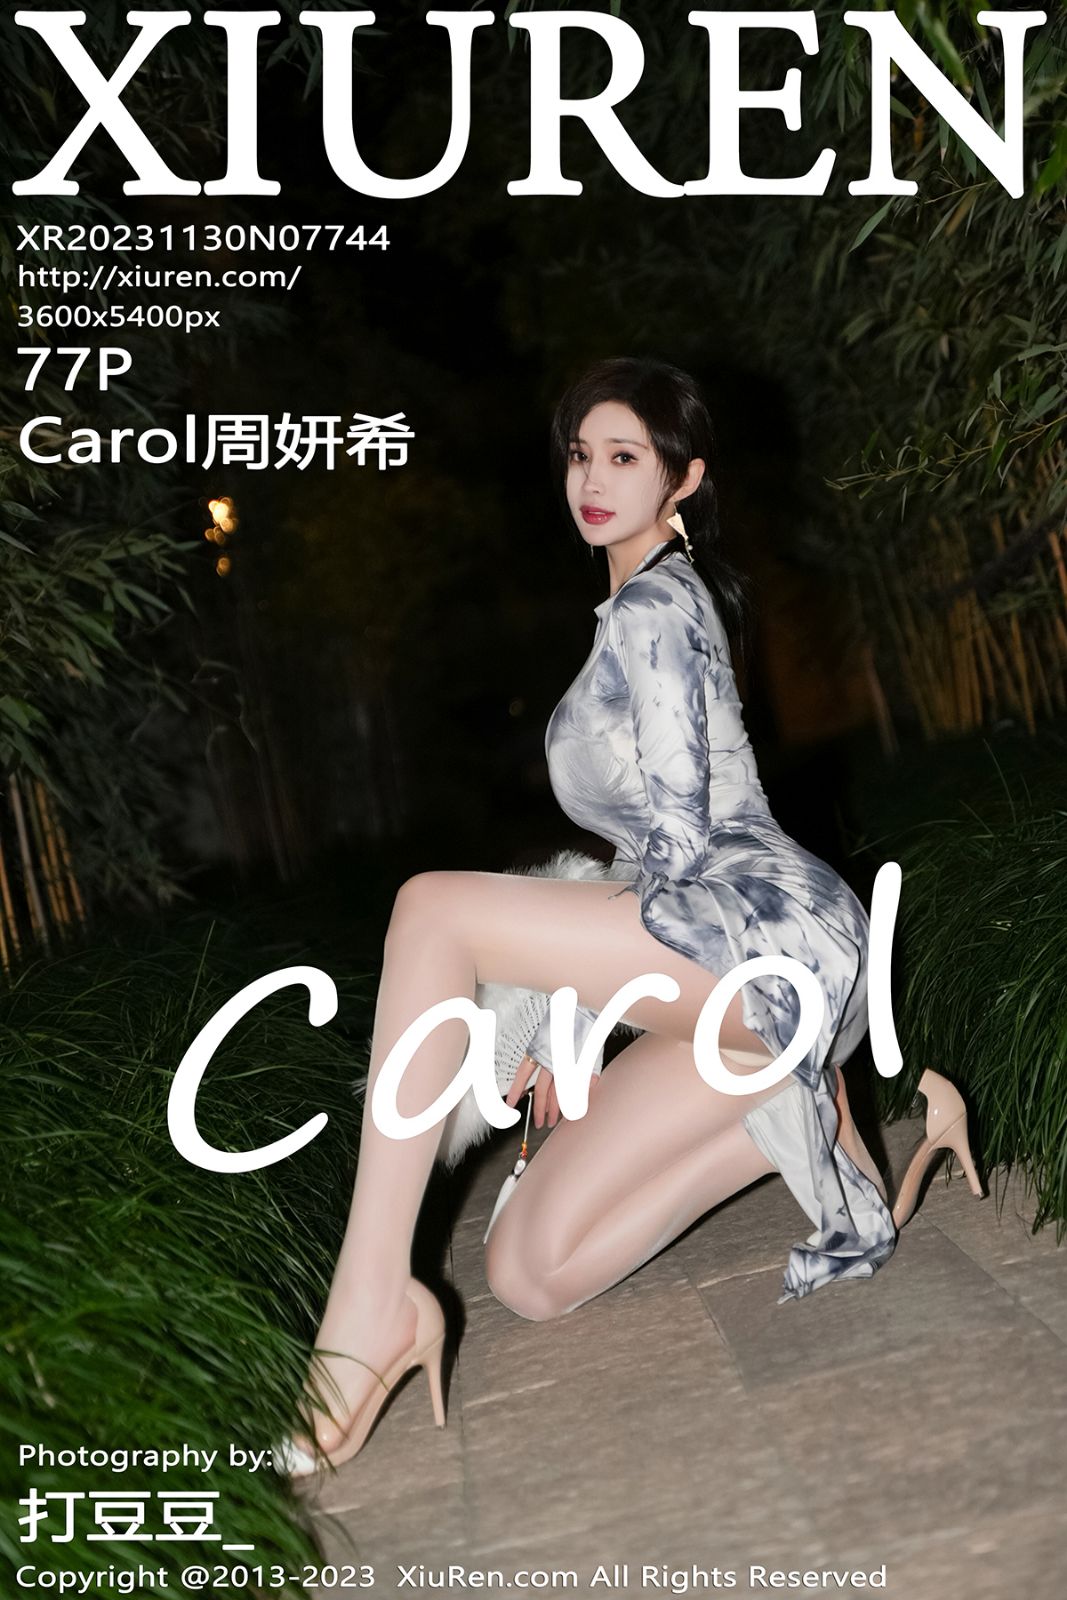 秀人网第7744期模特Carol周妍希 性感写真 77张1P 